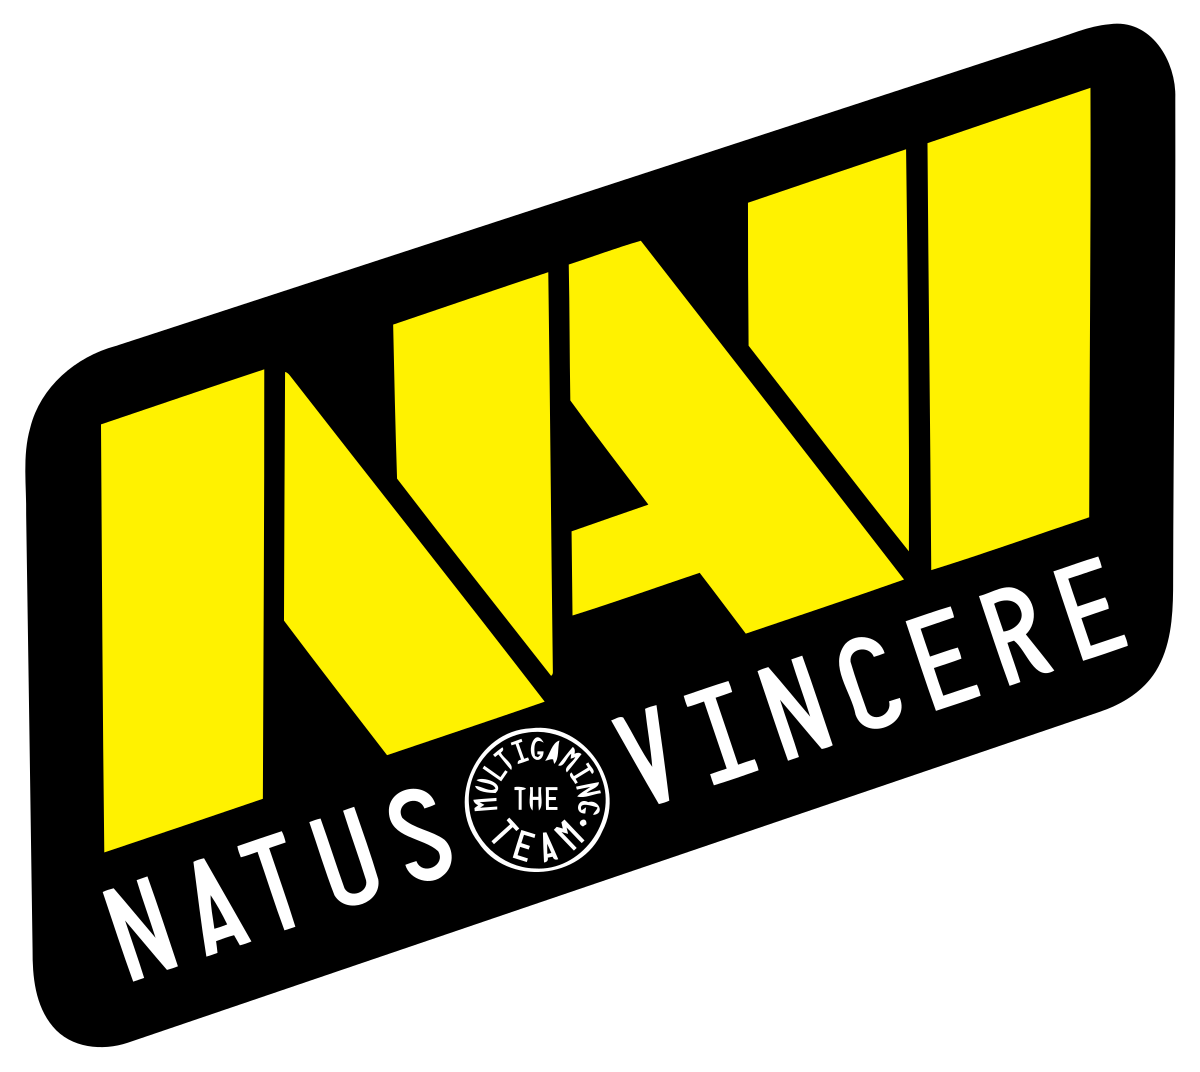 Natus Vincere Logo Png - KibrisPDR